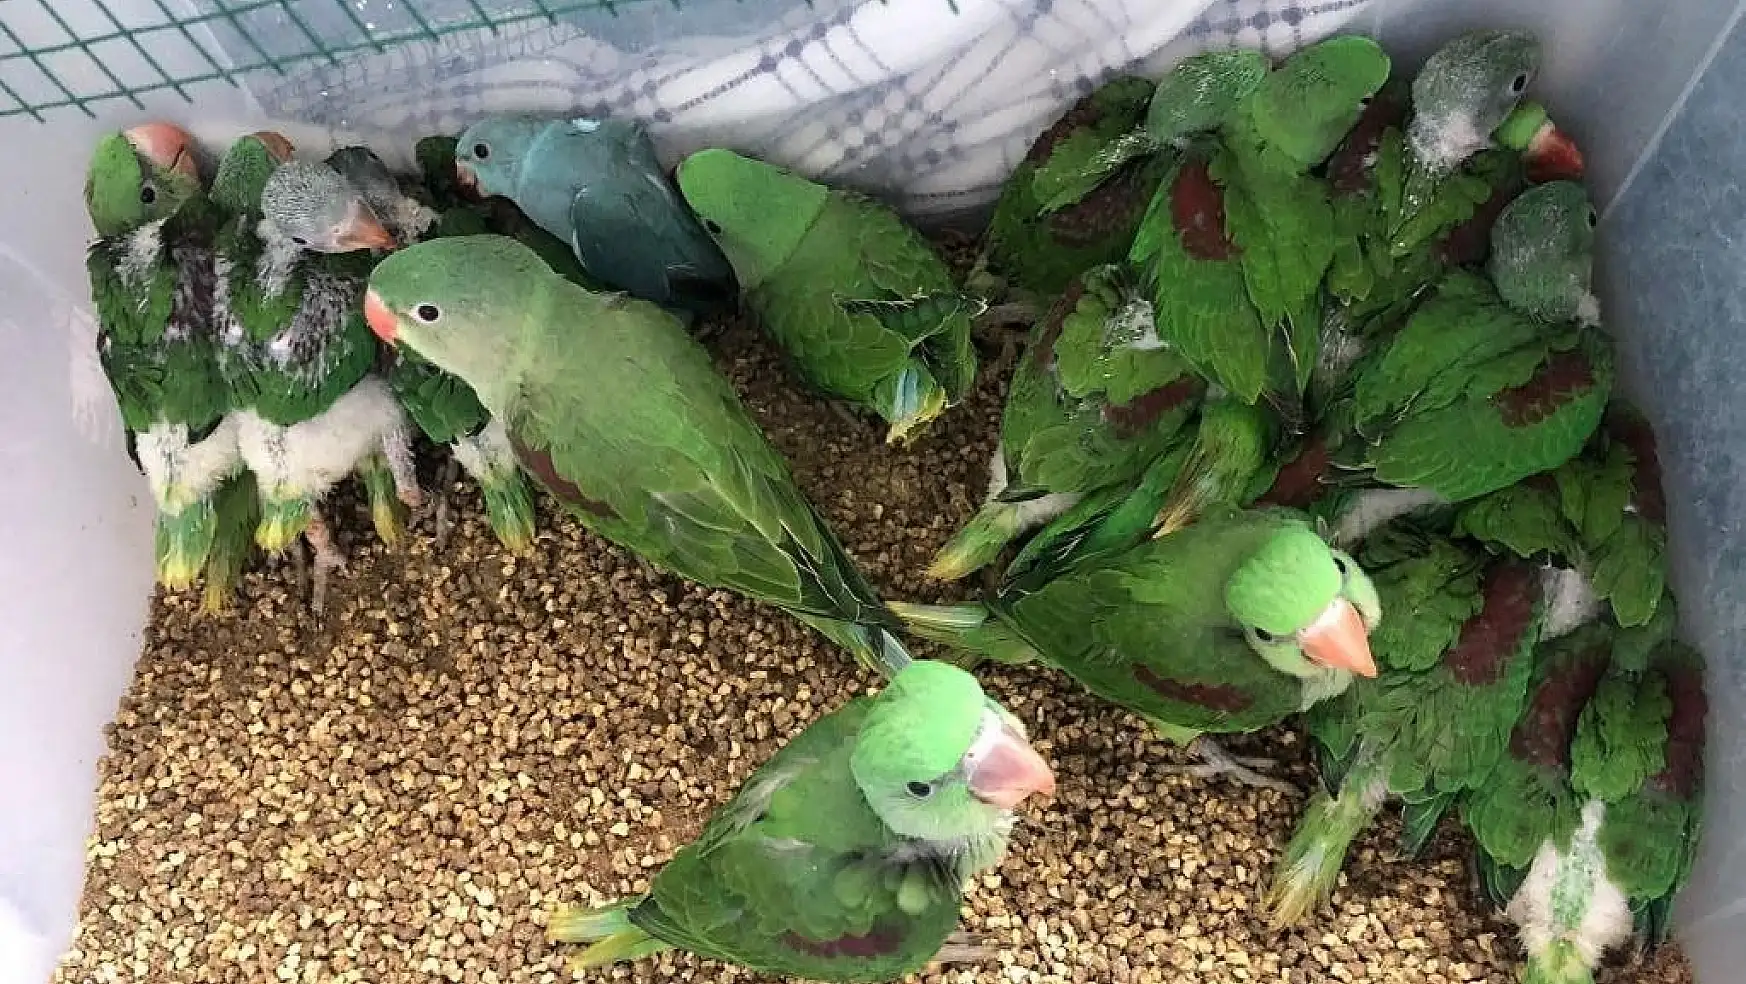 Bu kuşları satmak yasak! İstanbul polisi İskender Papağanlarını bakın nasıl buldu